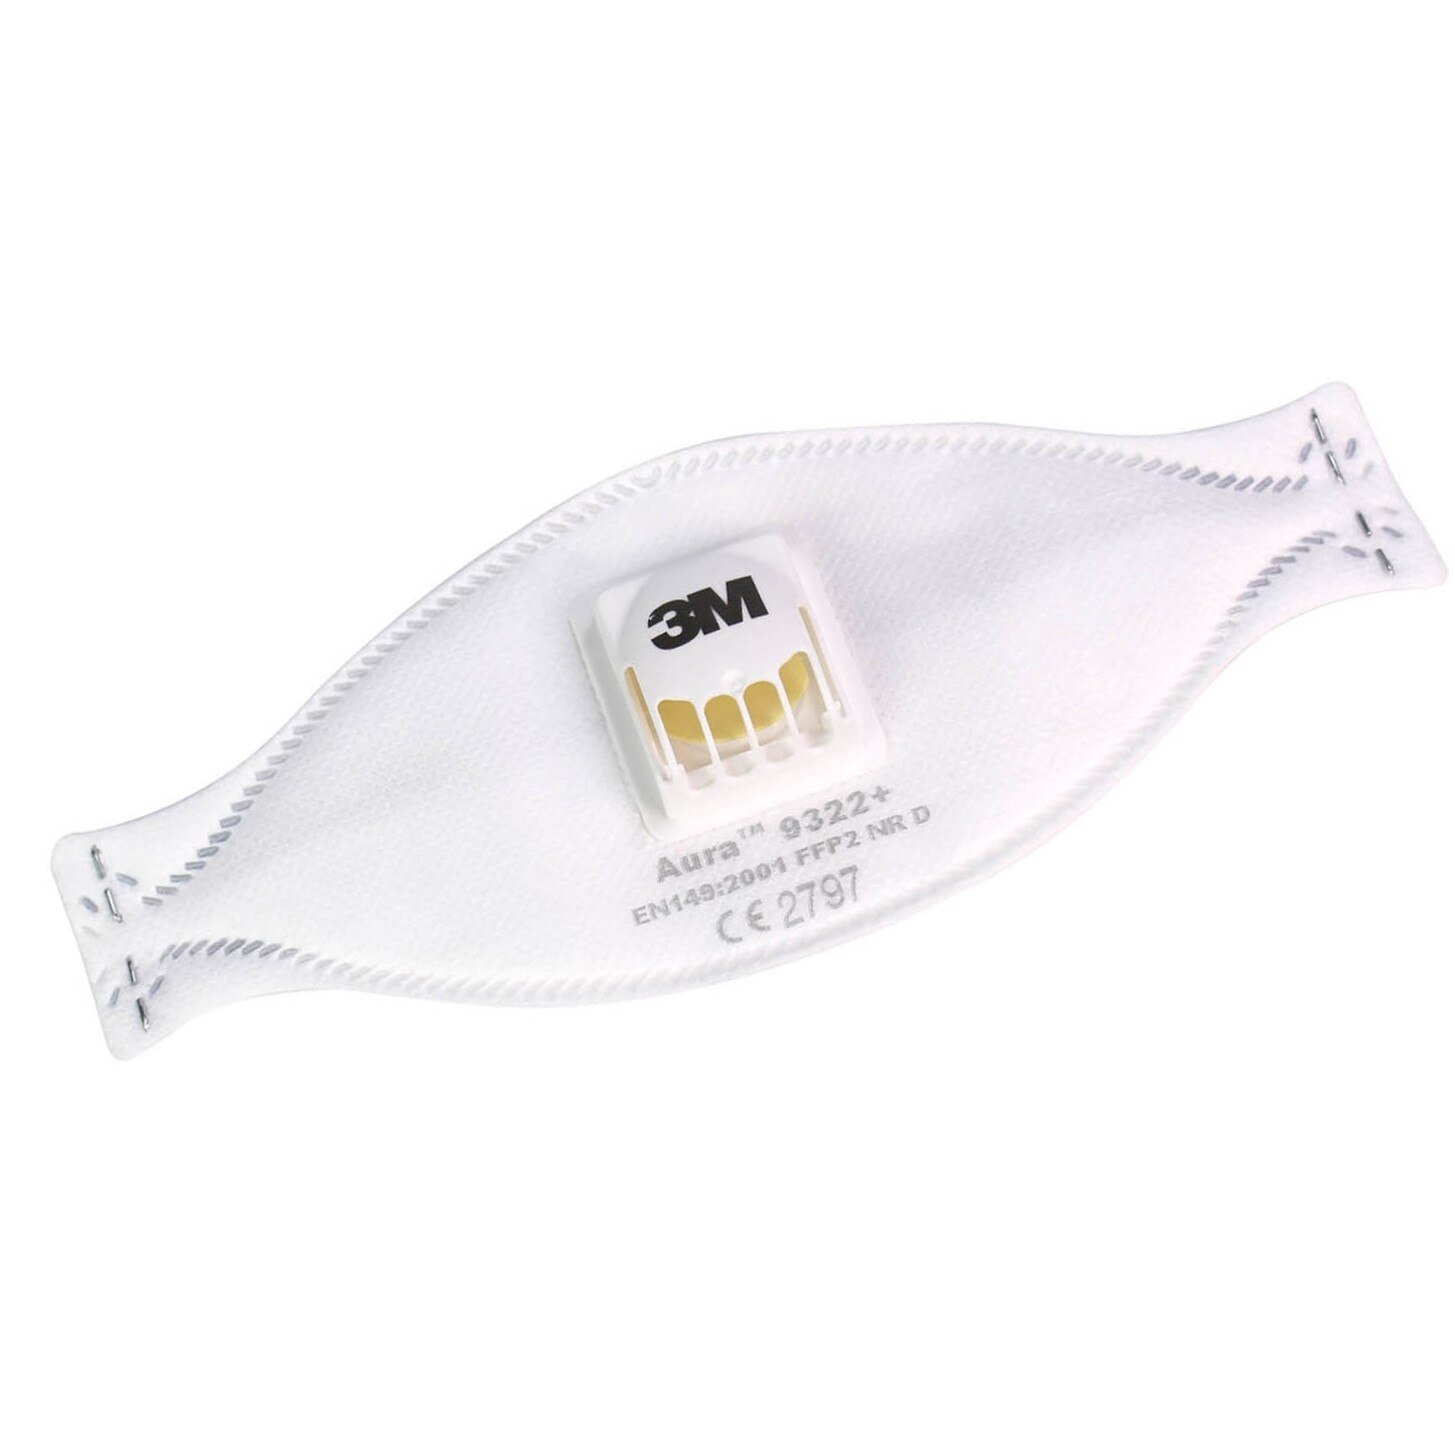 Комплект маски за дихателна защита 3M FFP2 Aura 9322+, FFP2 NR D, с .